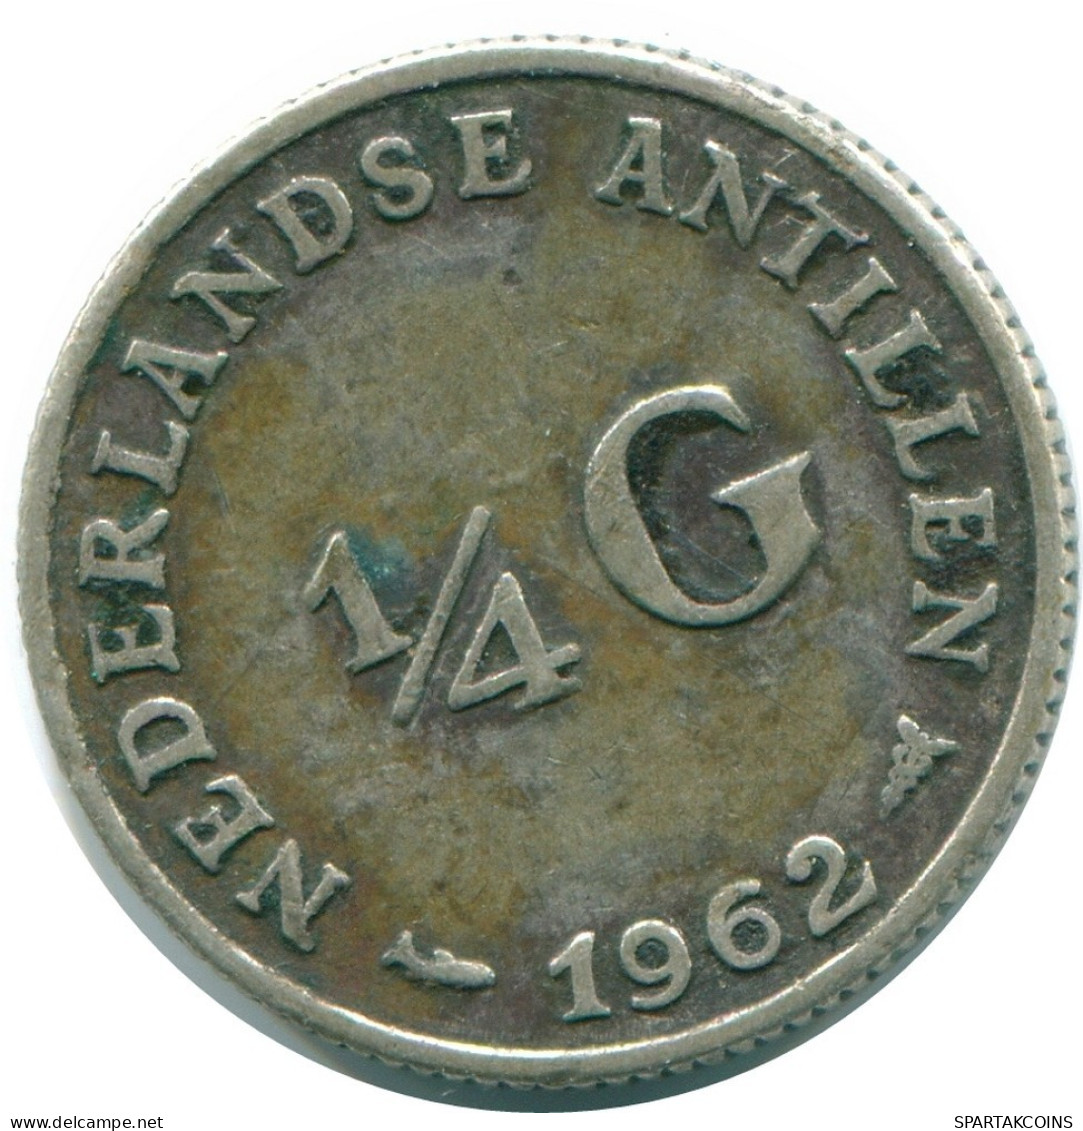 1/4 GULDEN 1962 NIEDERLÄNDISCHE ANTILLEN SILBER Koloniale Münze #NL11160.4.D.A - Niederländische Antillen